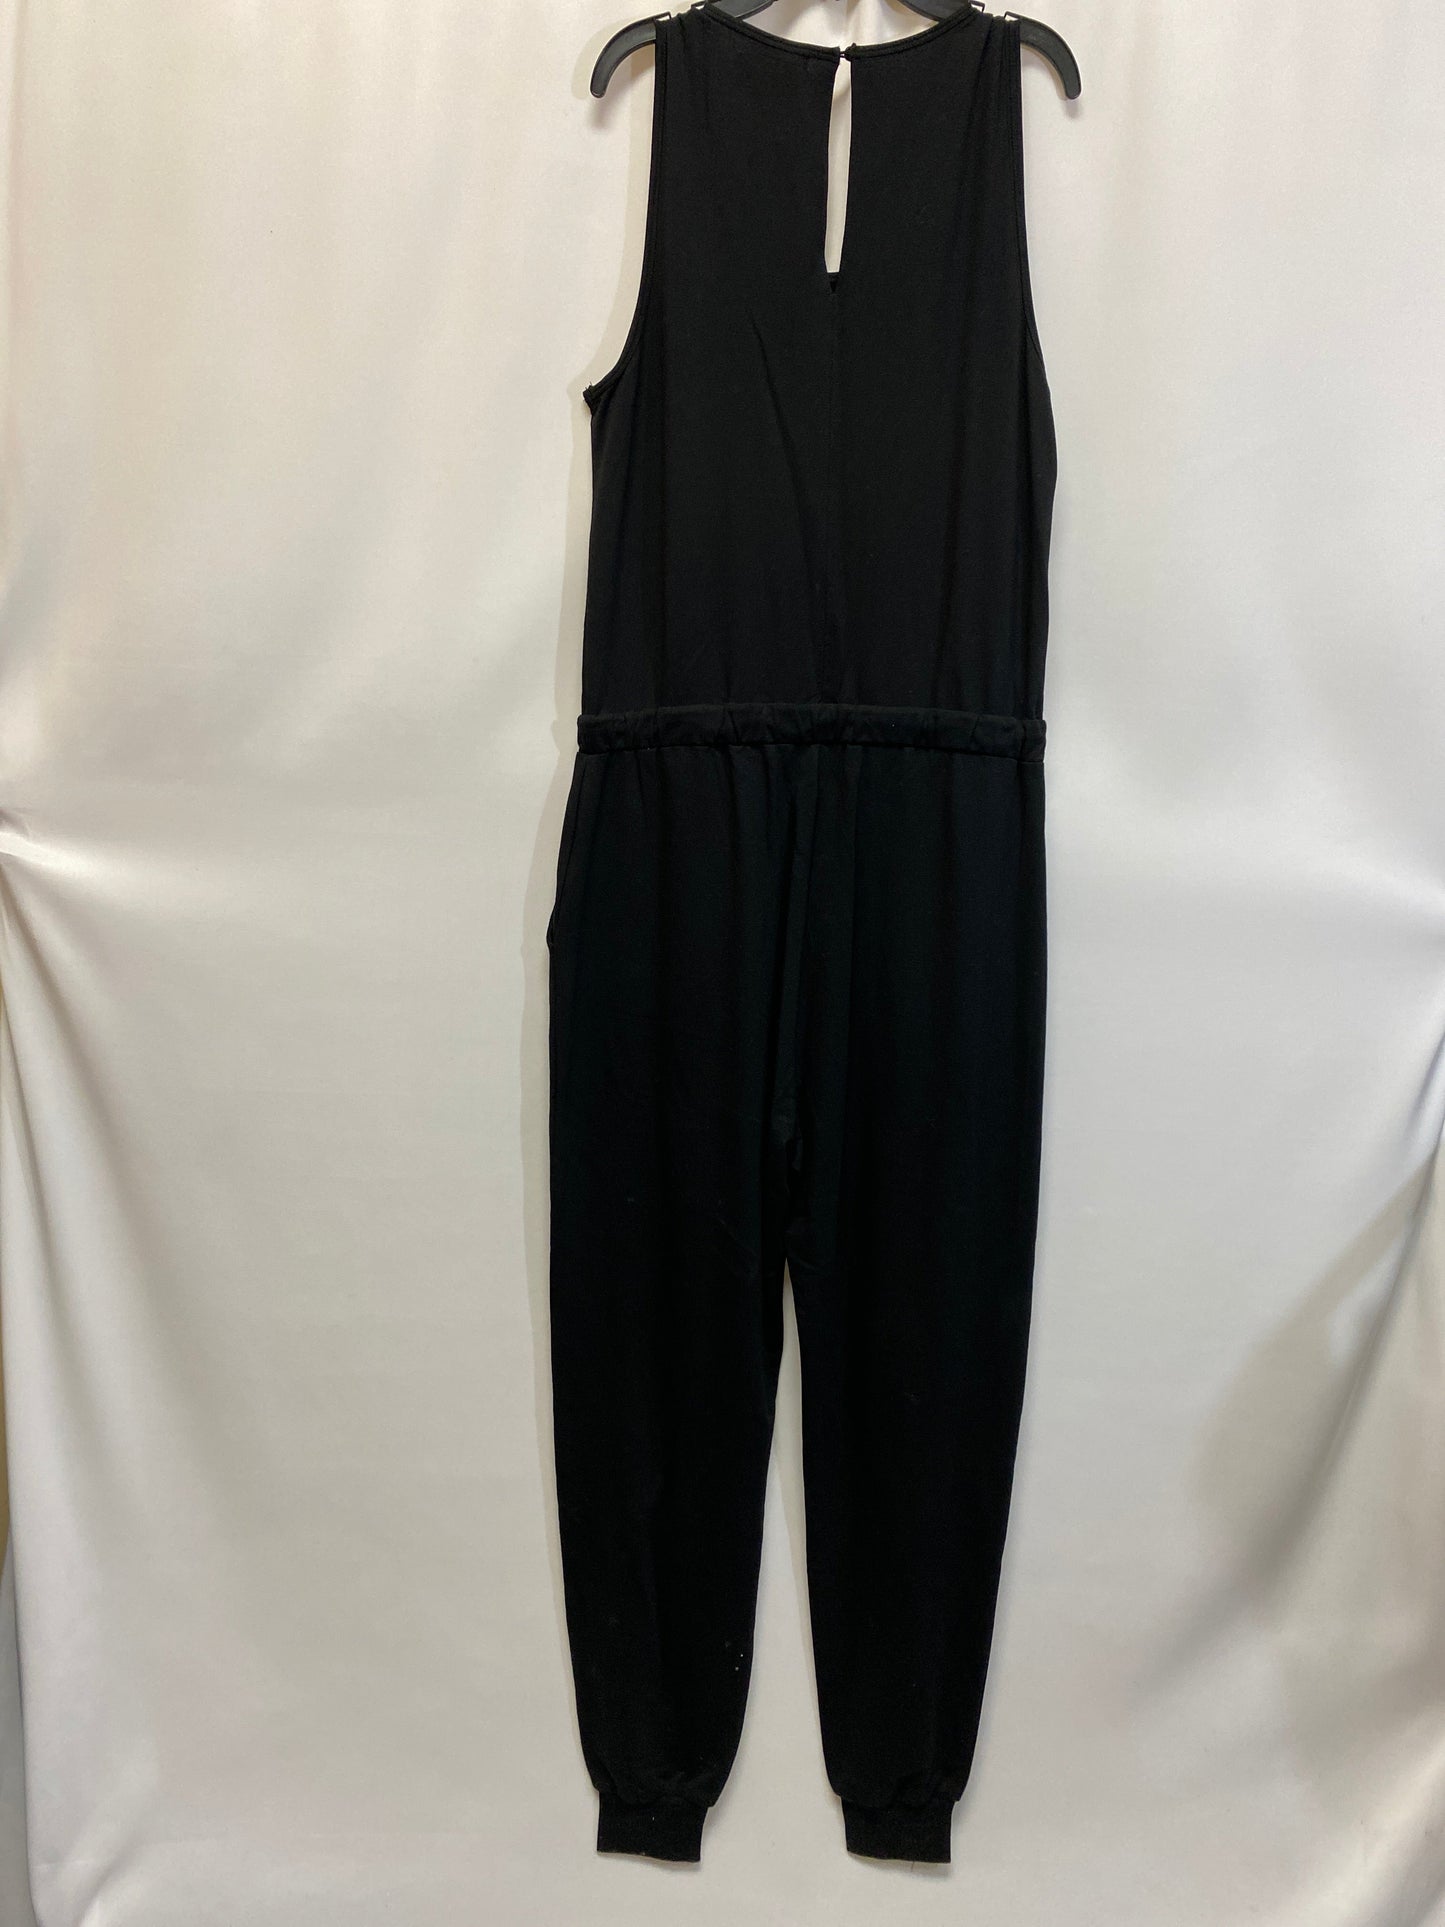 Black Jumpsuit Clothes Mentor, Size M